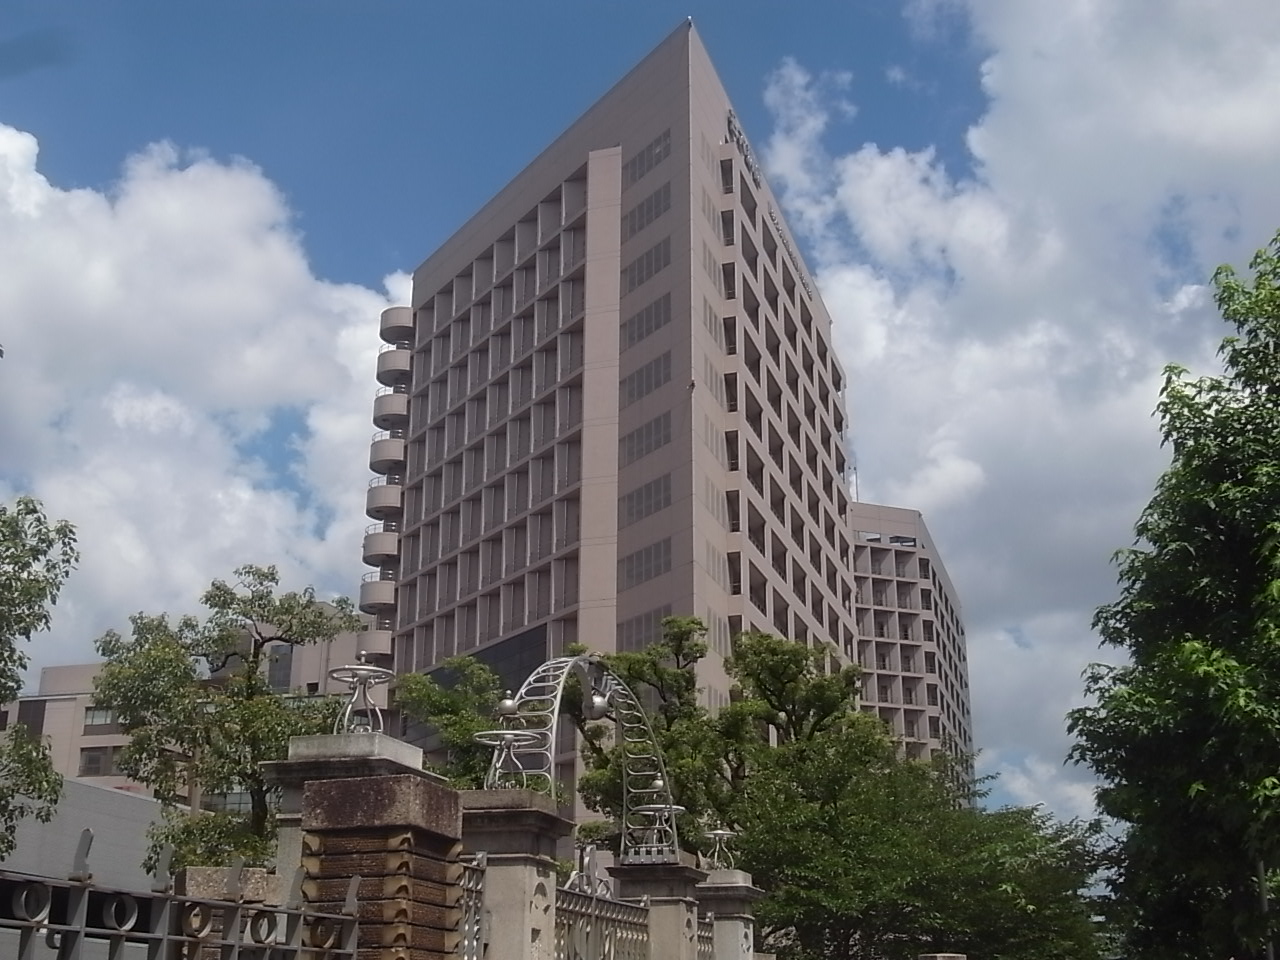 Hospital. 319m to Nagoya University Hospital (Hospital)